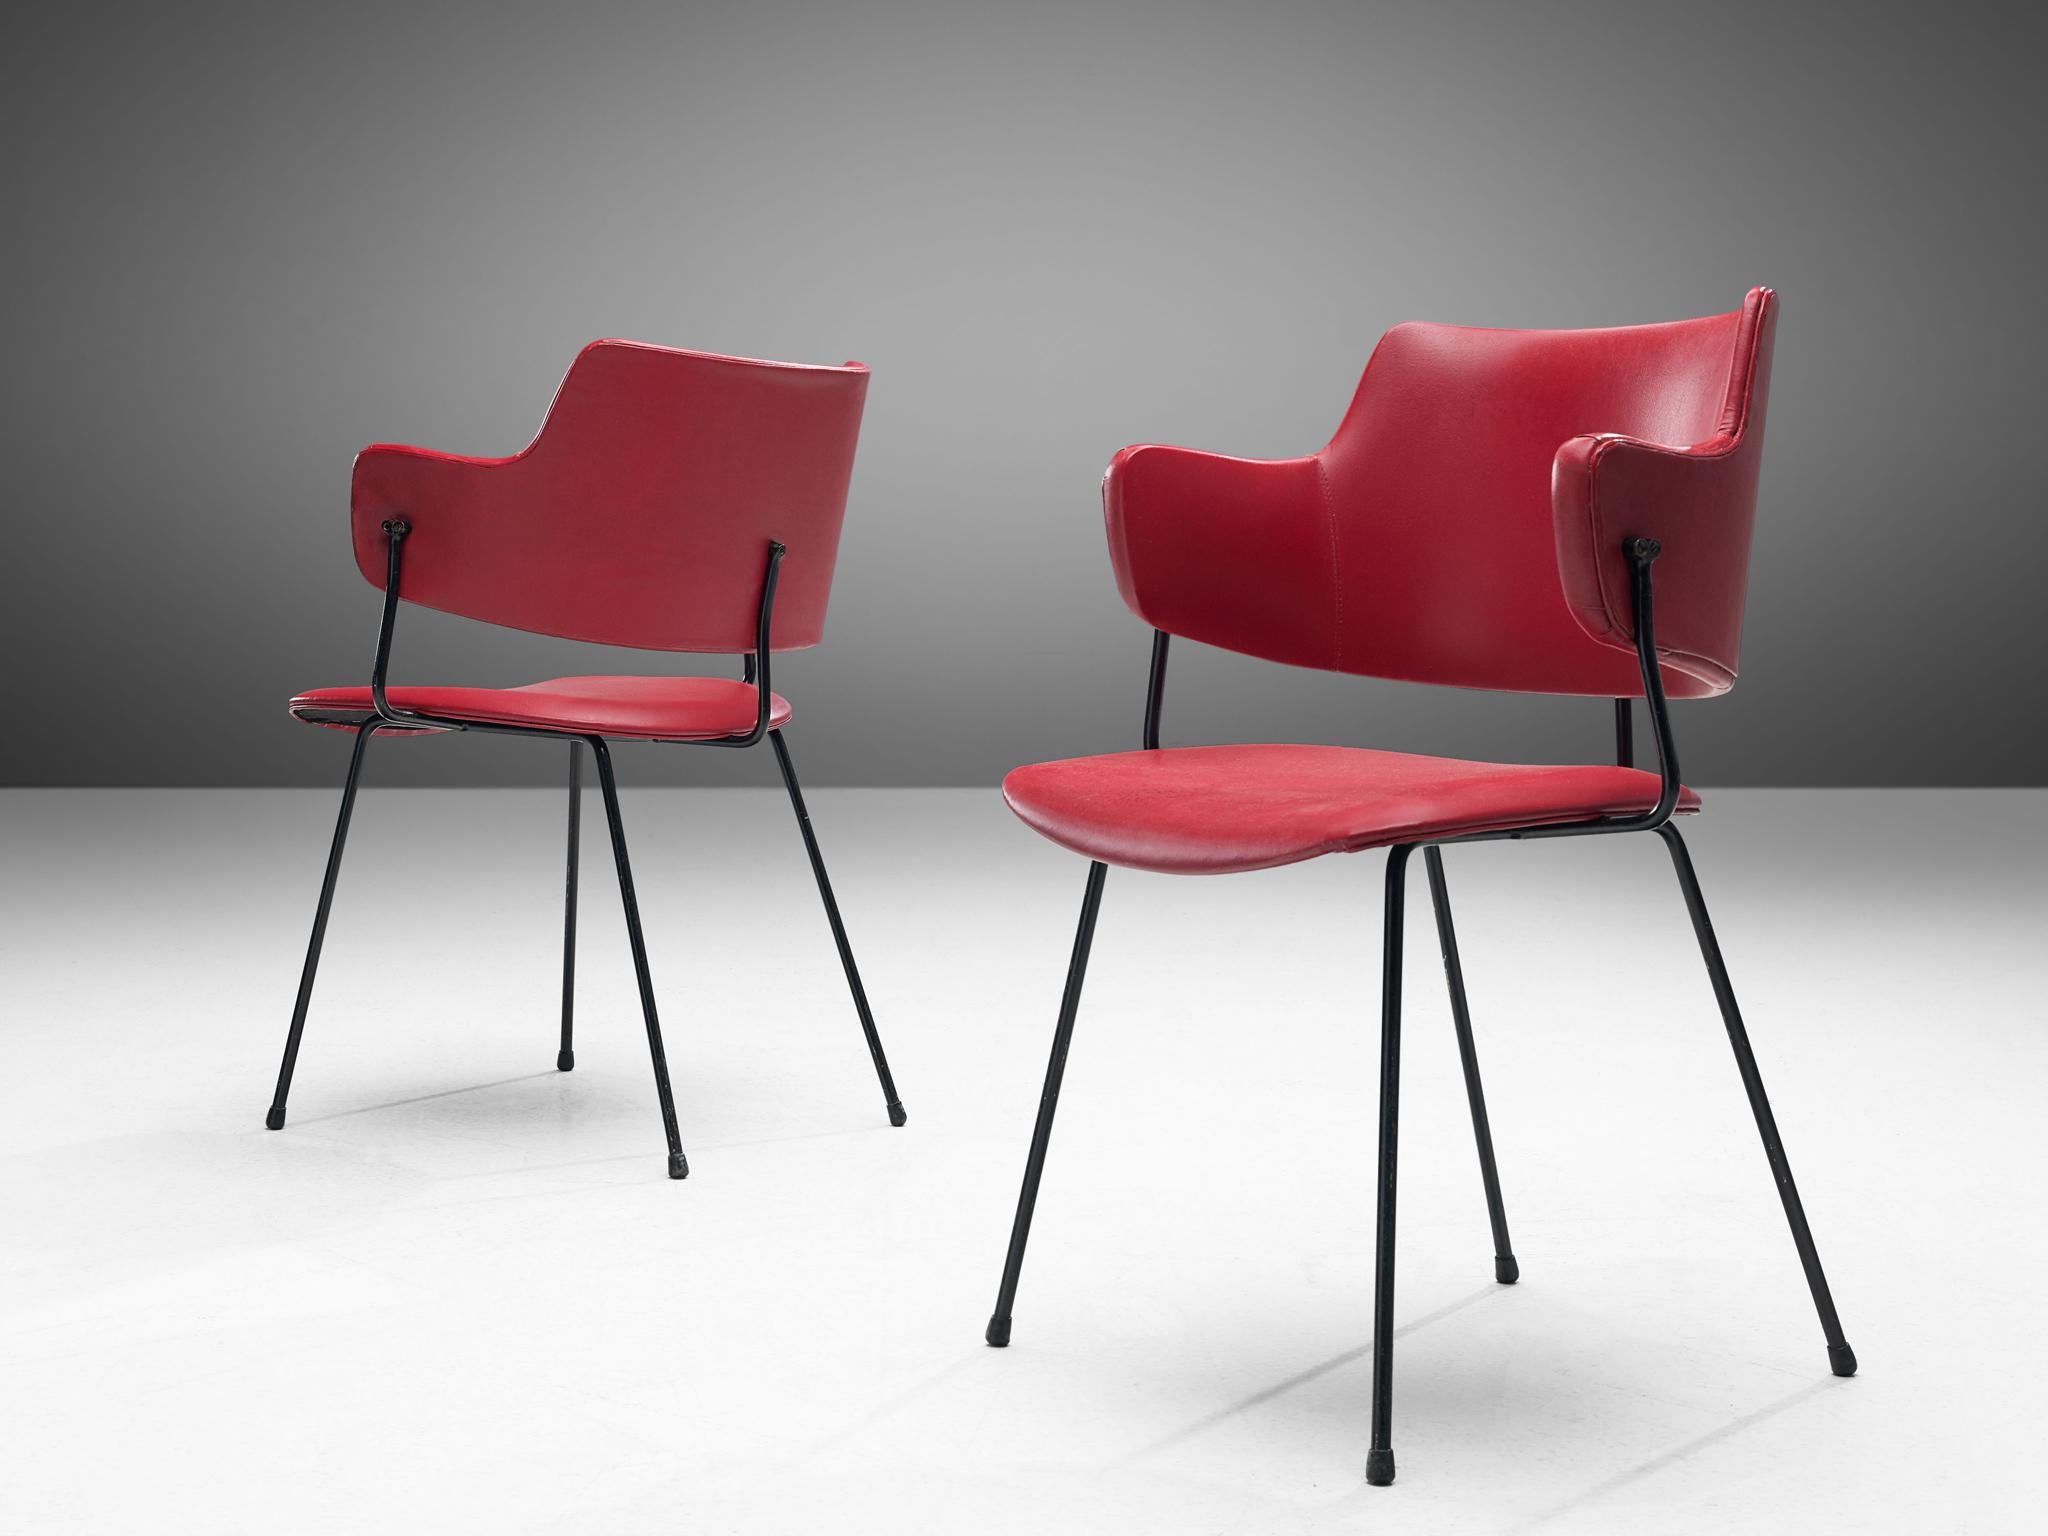 Wim Rietveld & Willem Gispen pour Kembo, chaises de salle à manger modèle '205', similicuir, métal, Pays-Bas, design 1954.

La chaise '205' est une création de Wim Rietveld et W.H. Gispen de 1954, fabriqué par Kembo. Le dossier présente une forme